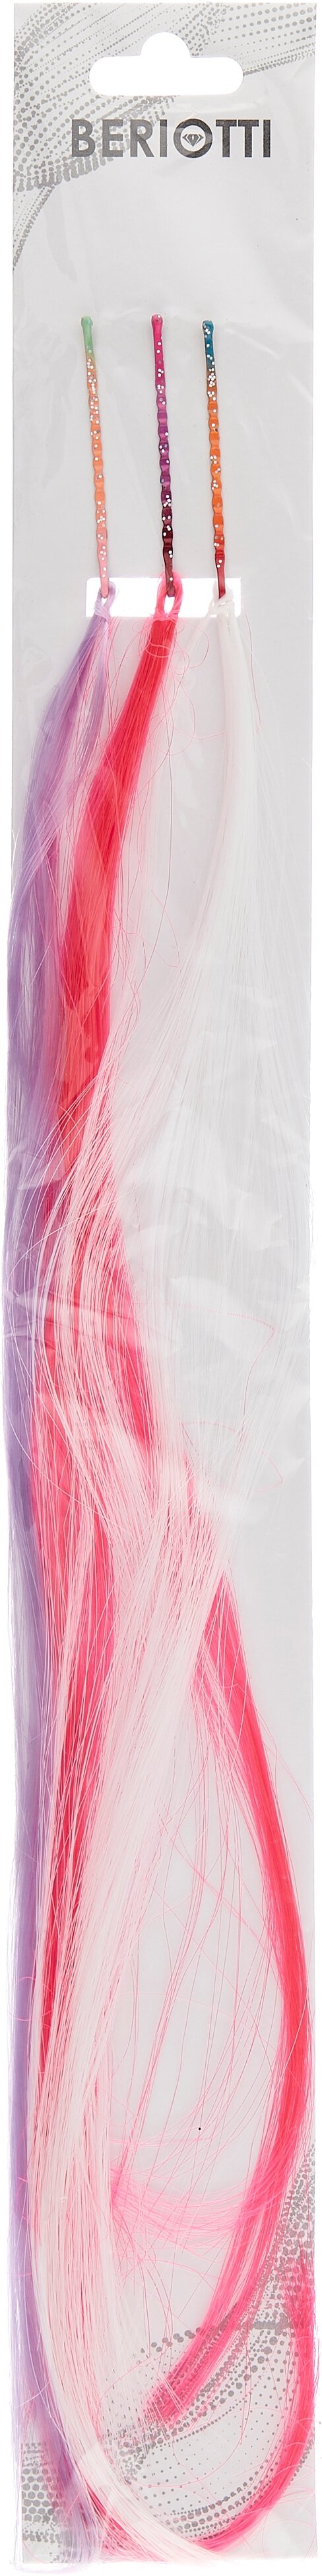 Цветные пряди волос BERIOTTI, на невидимках, длина 25-28см, ПВХ, 3 цвета